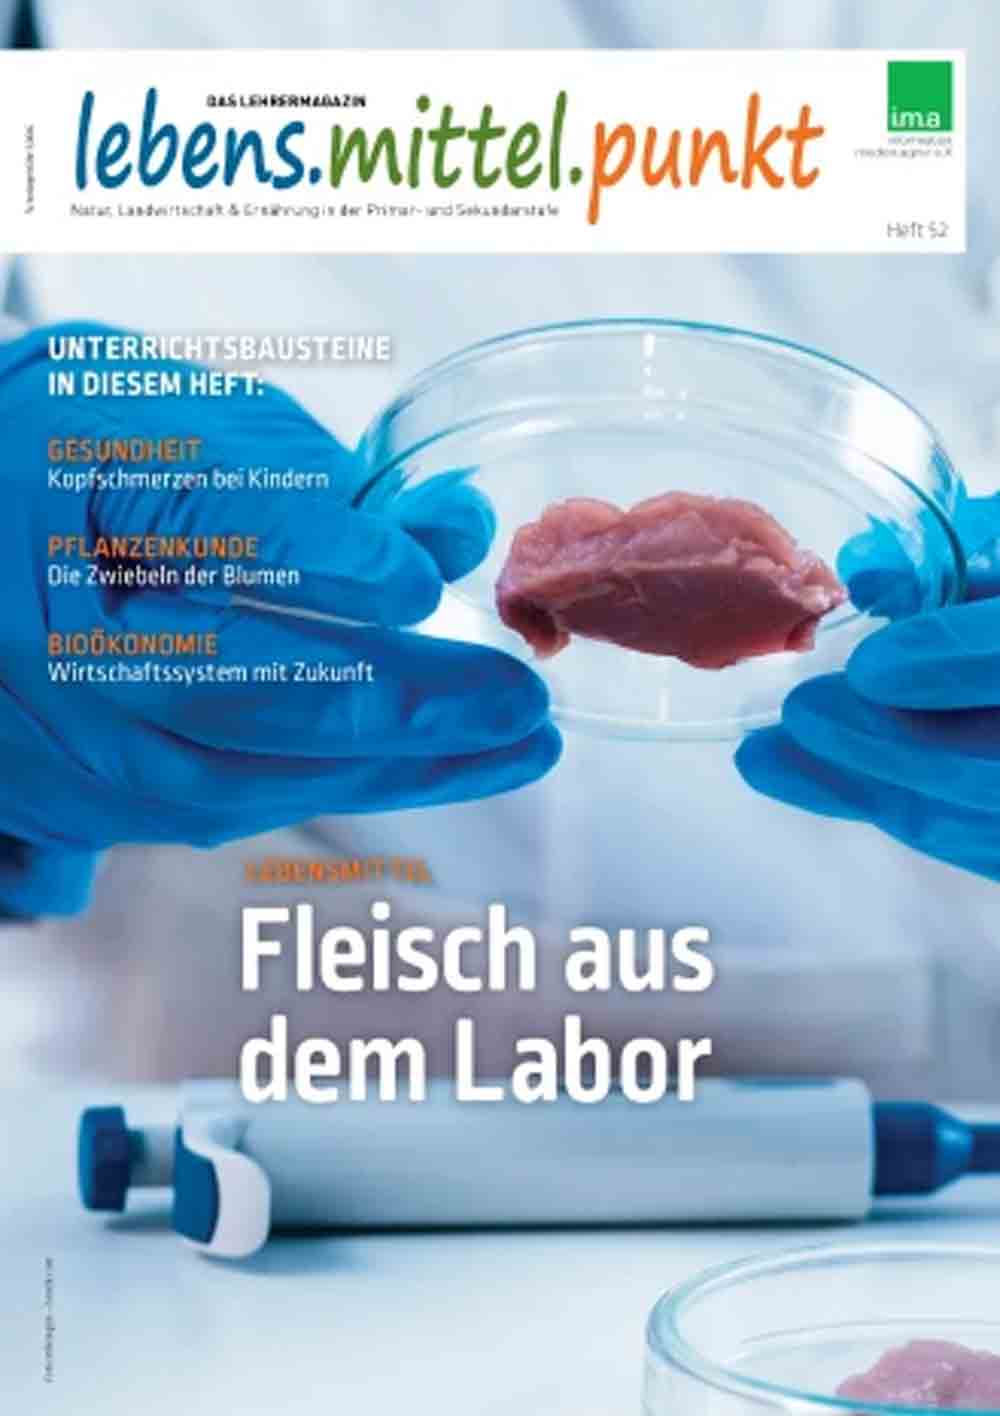 Fleisch aus dem Labor: von der Stammzelle zum Burger, das IMA Lehrermagazin über die Erforschung alternativer Nahrungsmittel